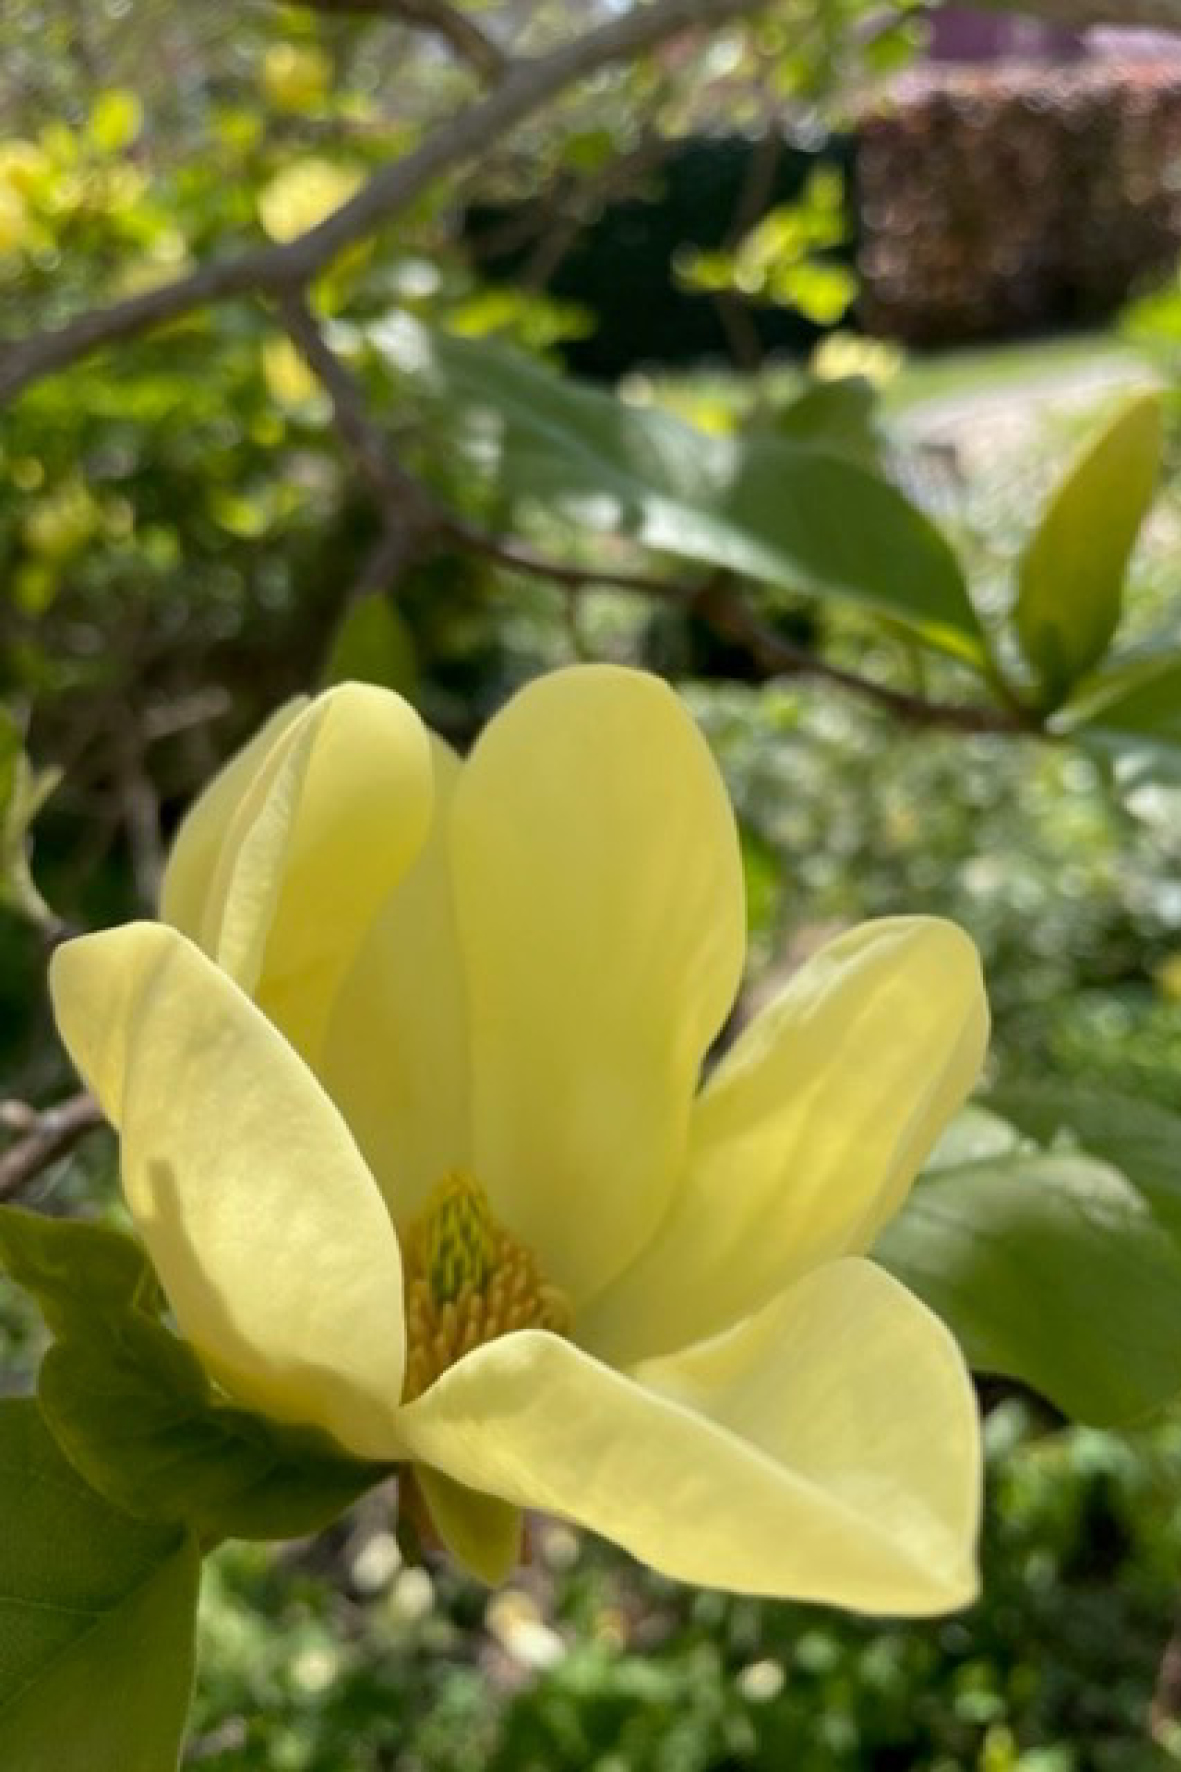 Mellan magnolia och konst – Badhusparken som ny mötesplats